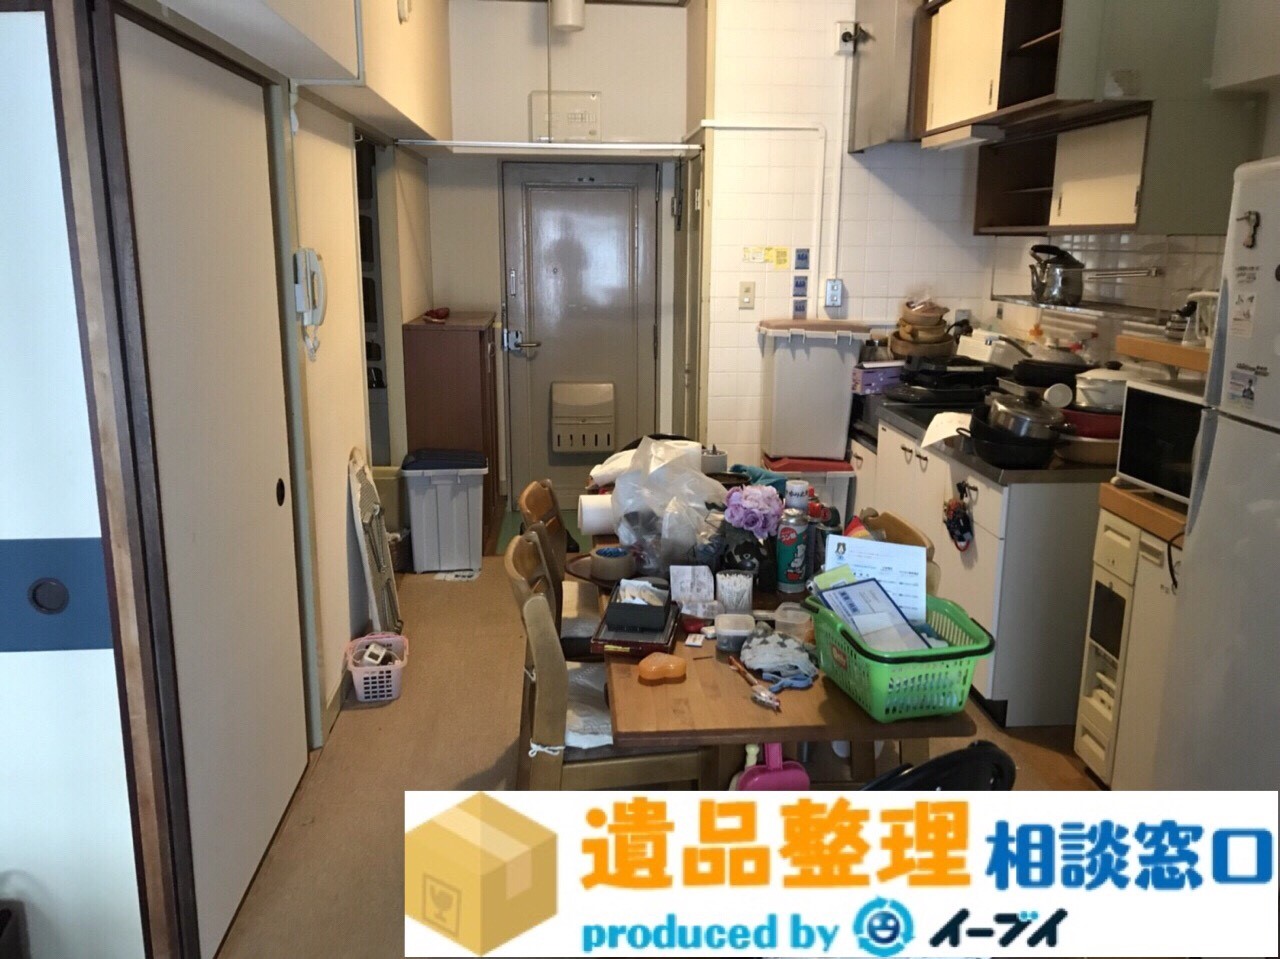 大阪府吹田市で遺品整理に伴う生活ゴミや調理器具の片付け処分。のアイキャッチ